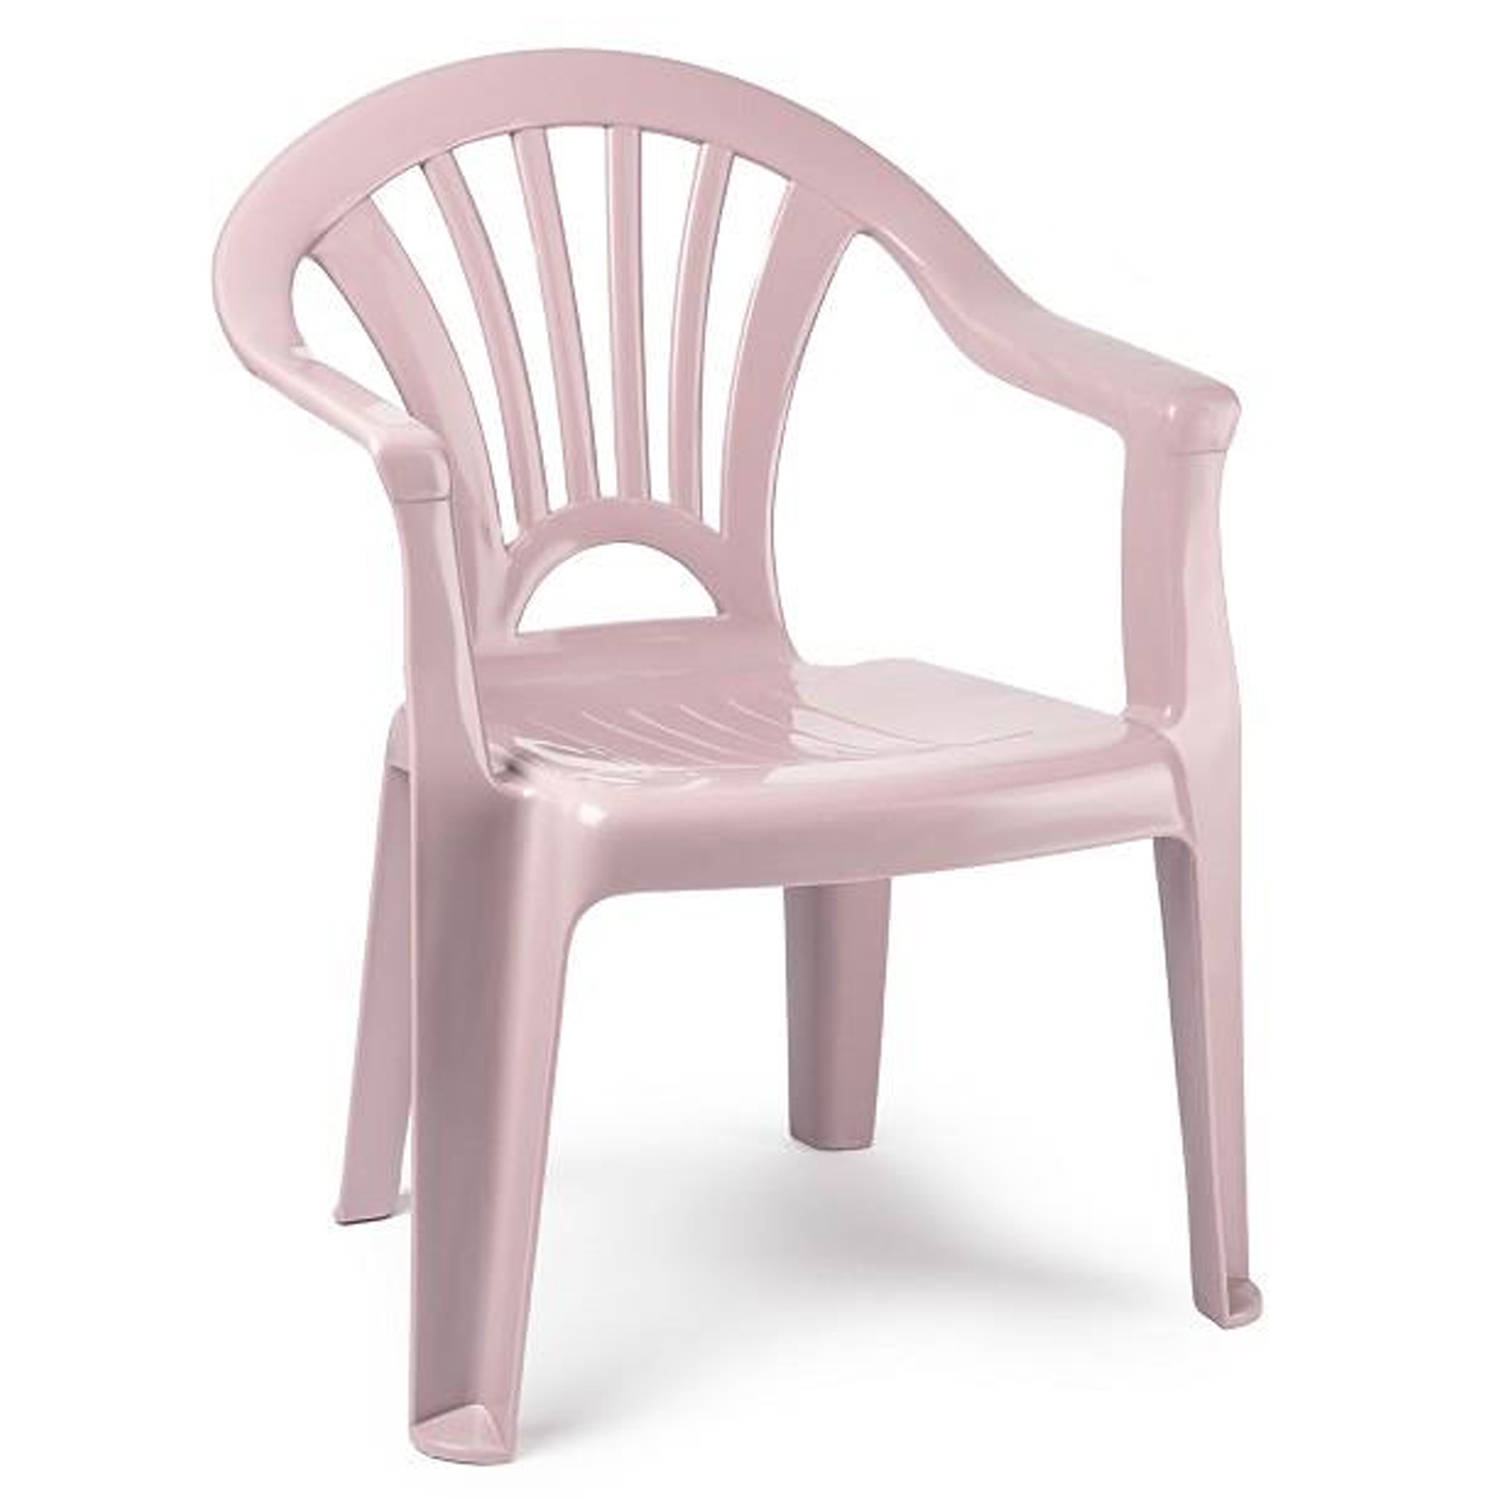 Plasticforte Kinderstoel van kunststof - roze - 35 x 28 x 50 cm - tuin/camping/slaapkamer